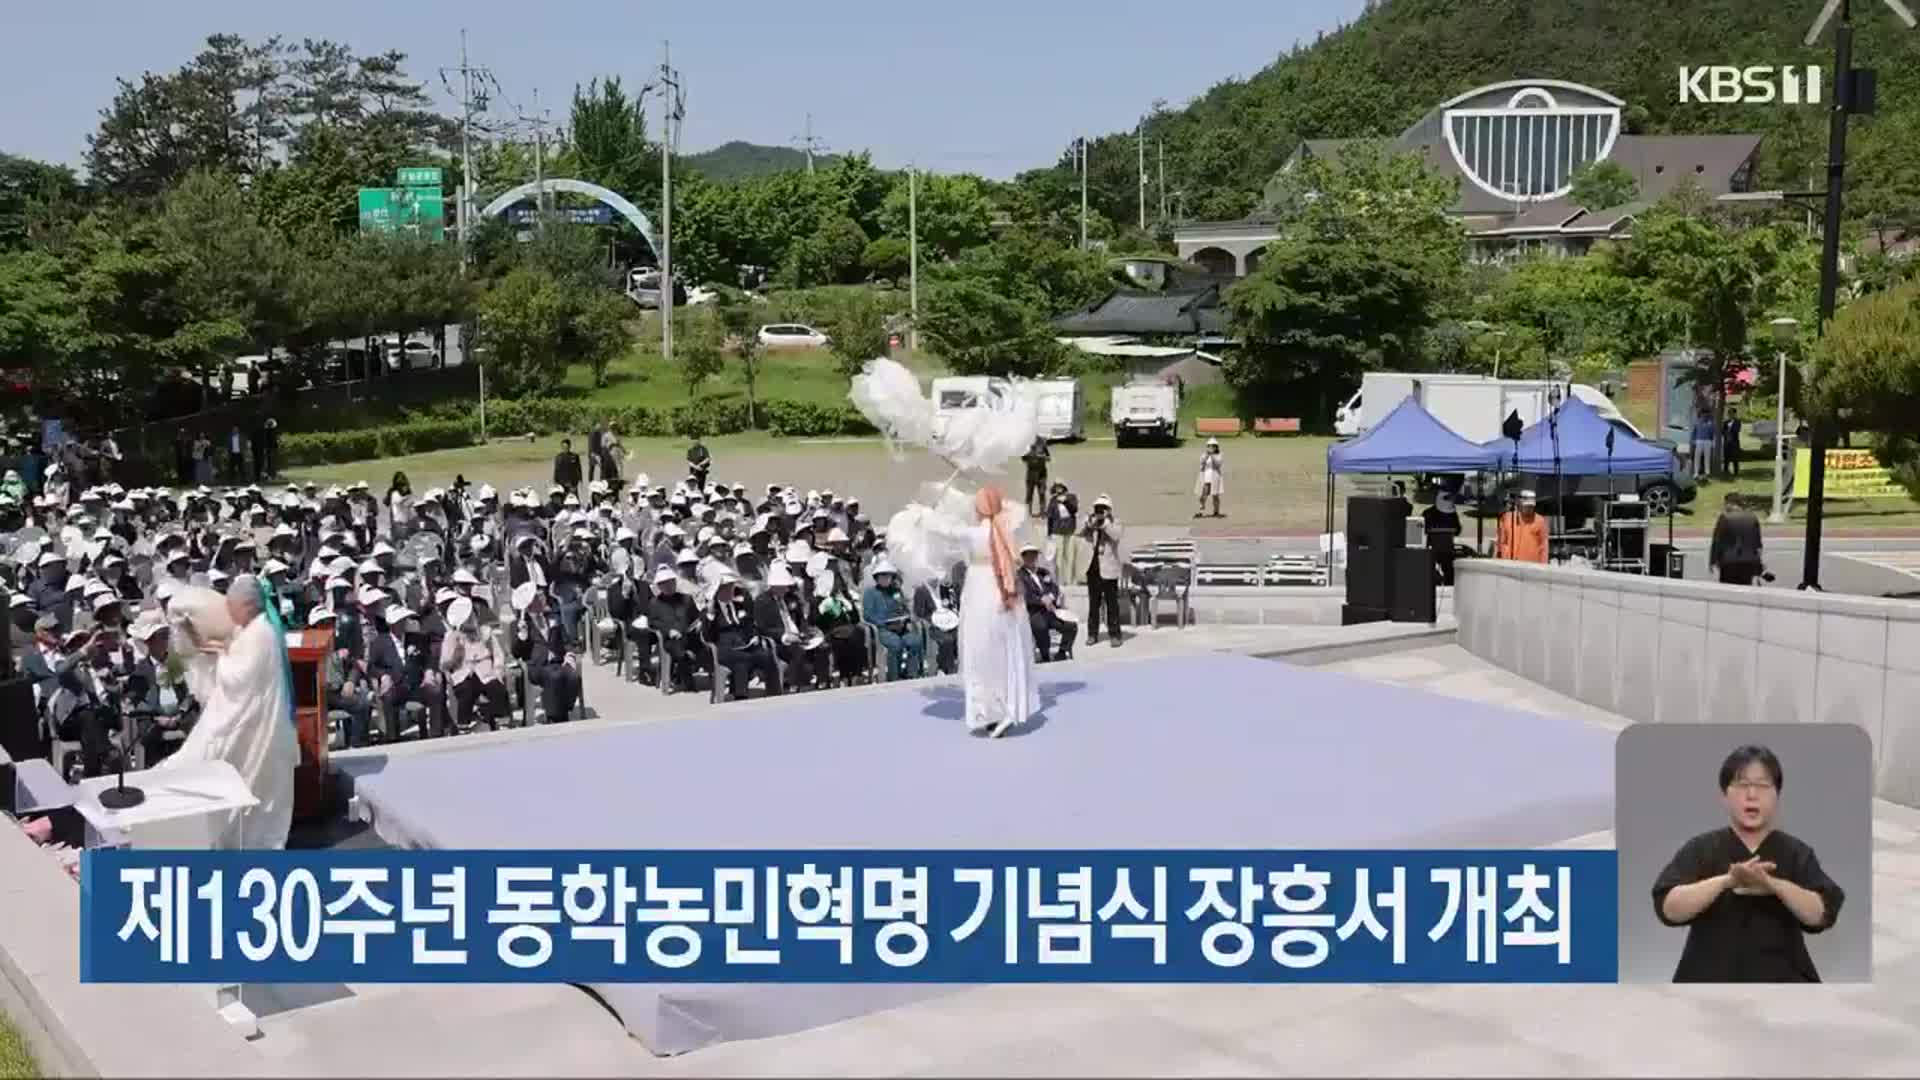 제130주년 동학농민혁명 기념식 장흥서 개최